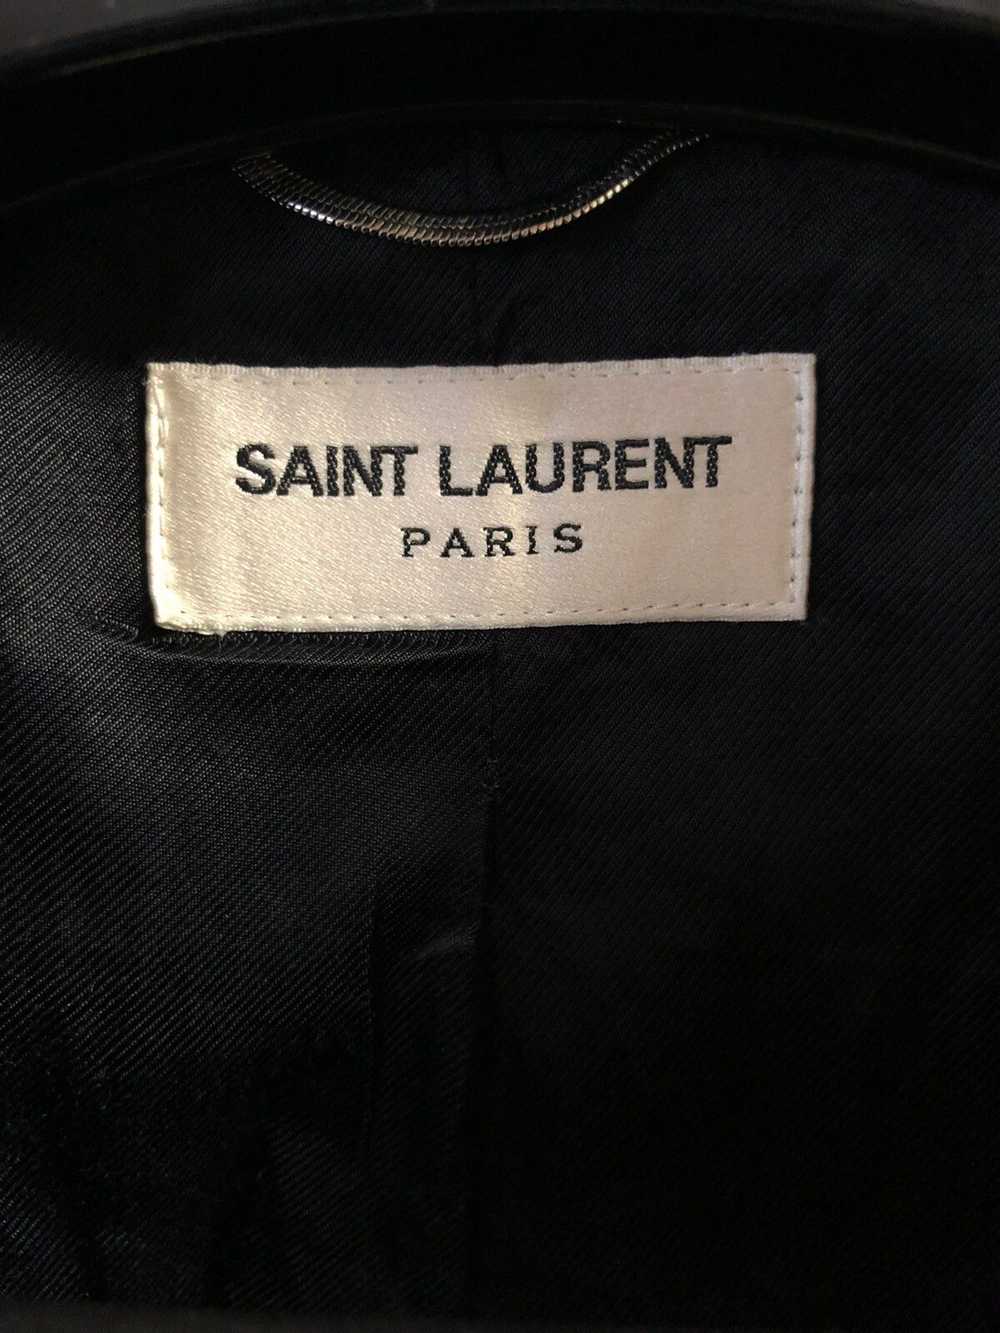 Saint Laurent Paris FW14 Short Wool Coat sz 54 - image 7